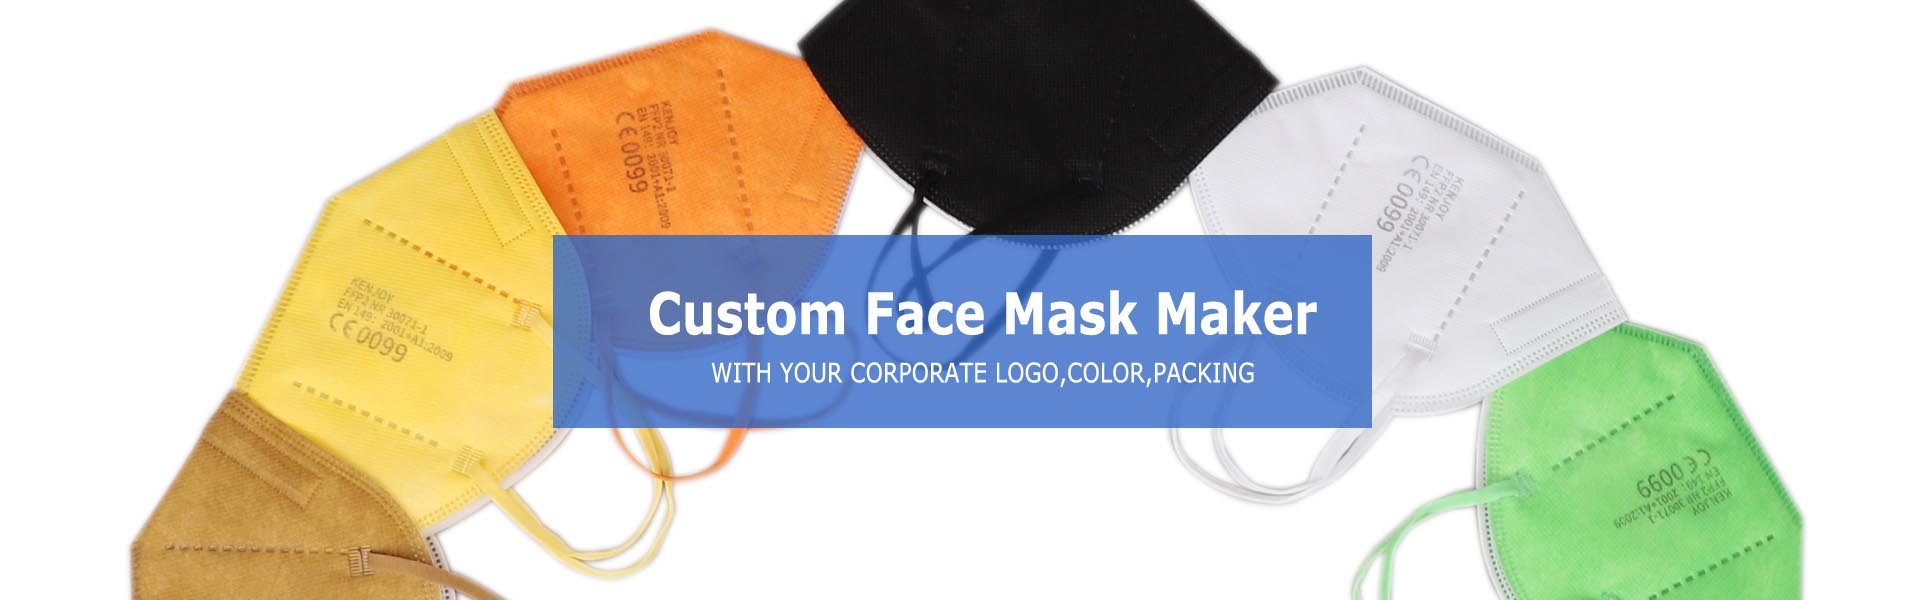 grosir masker raray custom